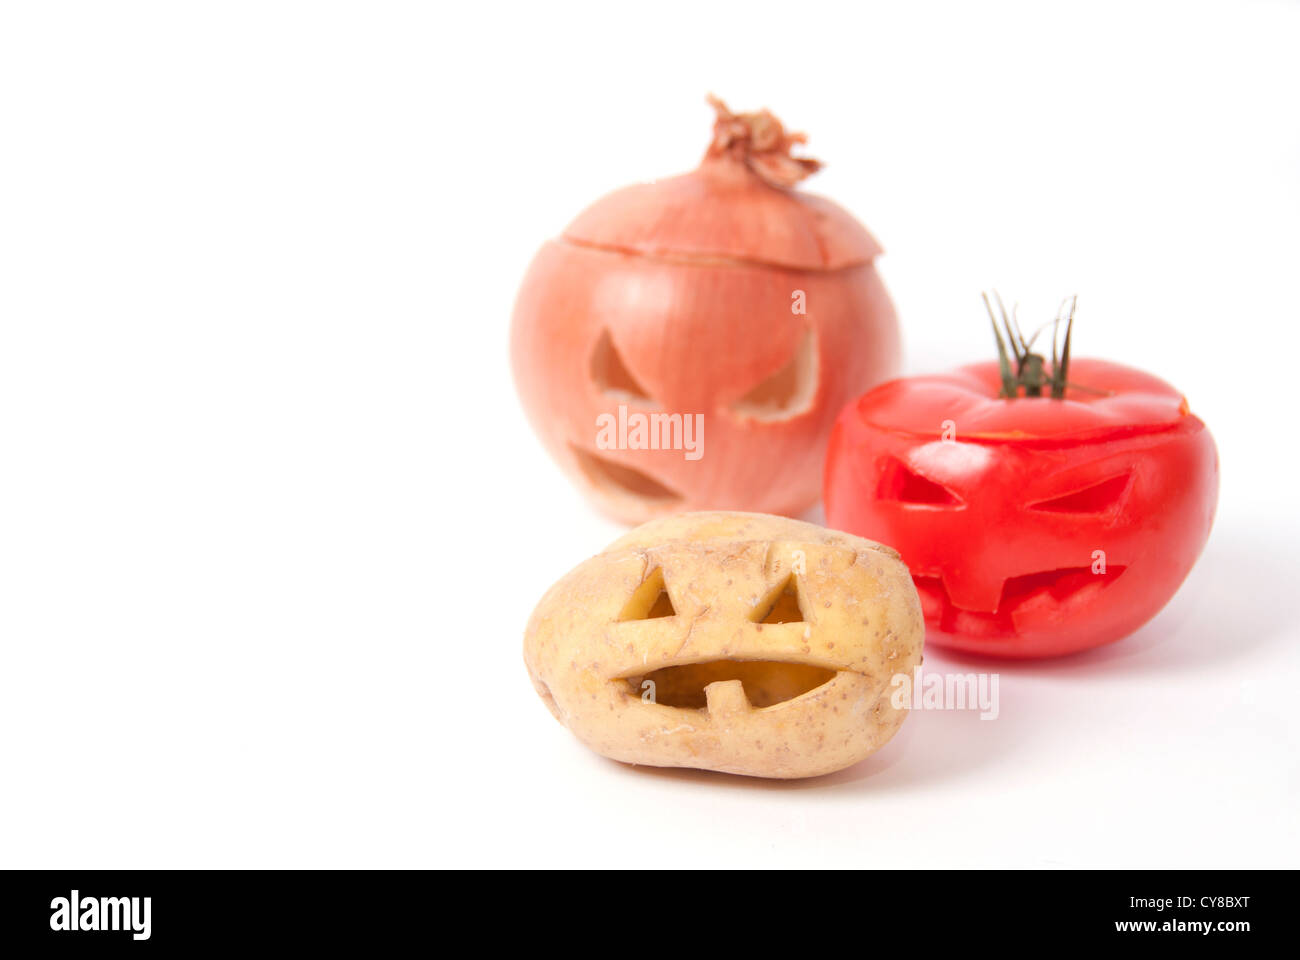 Halloween Gesichter geschnitzt in Gemüse wie Kartoffeln, Tomaten, Zwiebel  und statt Kürbis bilden spezielle Jack-o-Laternen Stockfotografie - Alamy